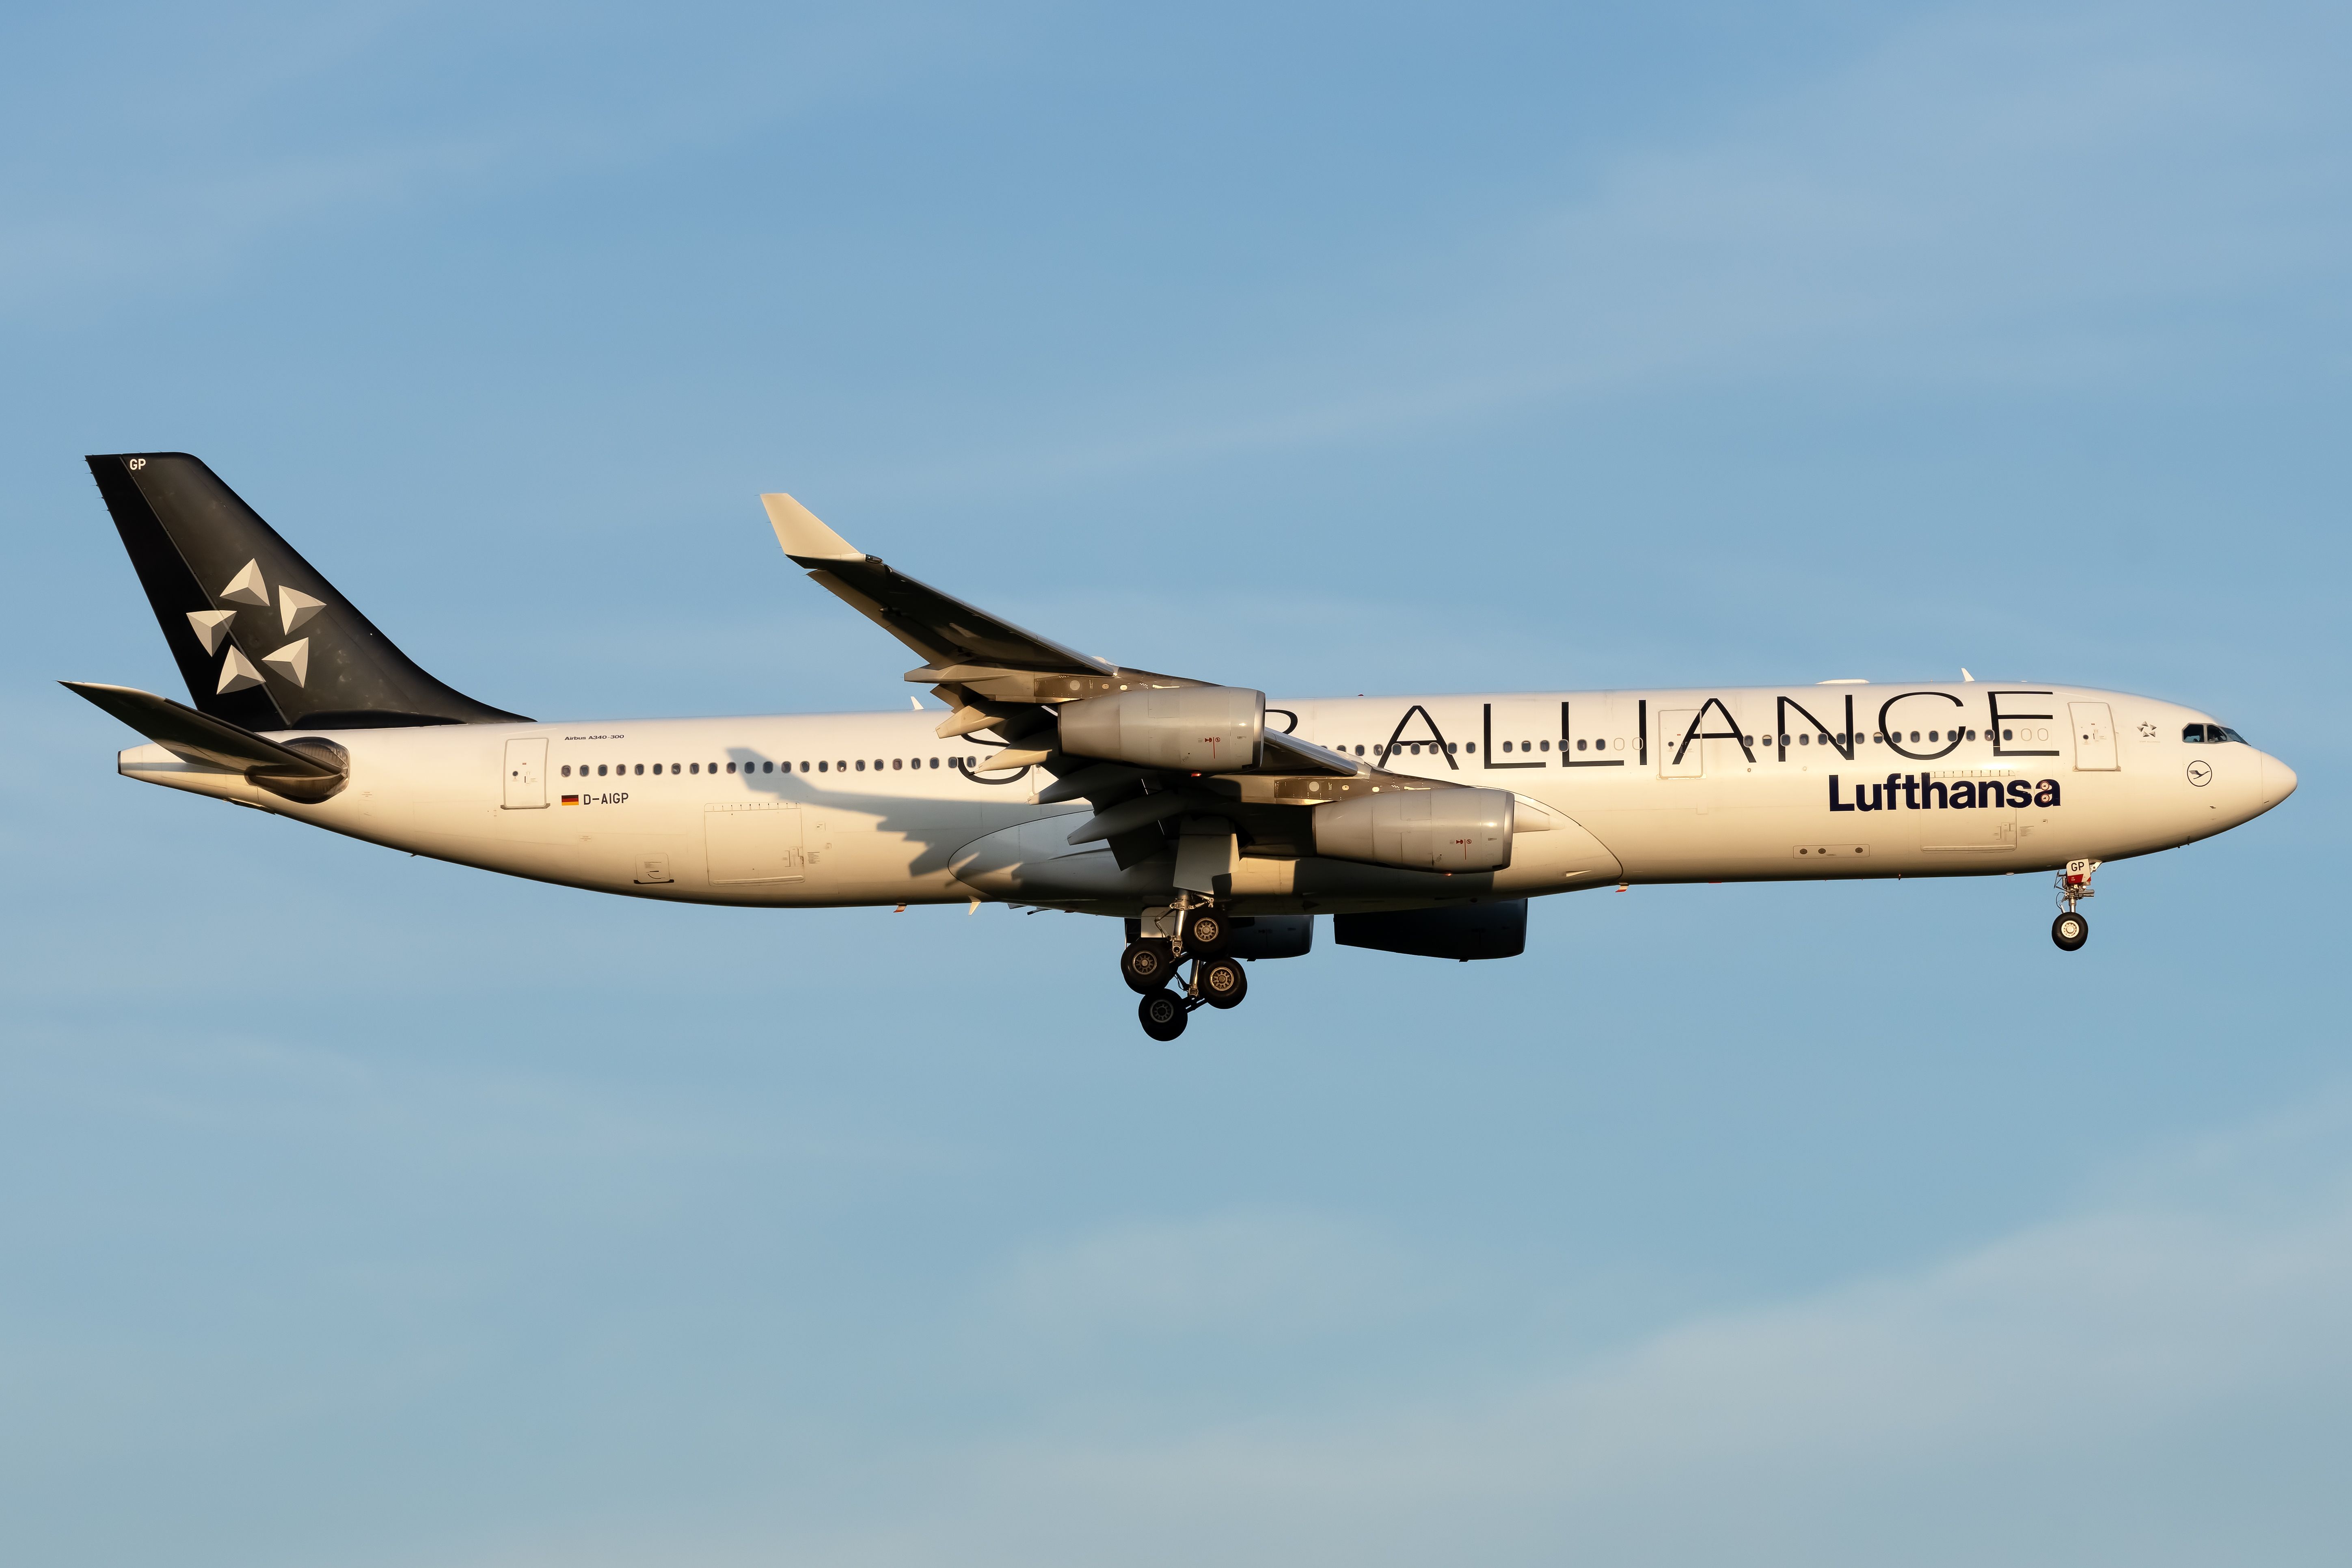 D-AIGP Lufthansa (Star Alliance livery) Airbus A340-313 